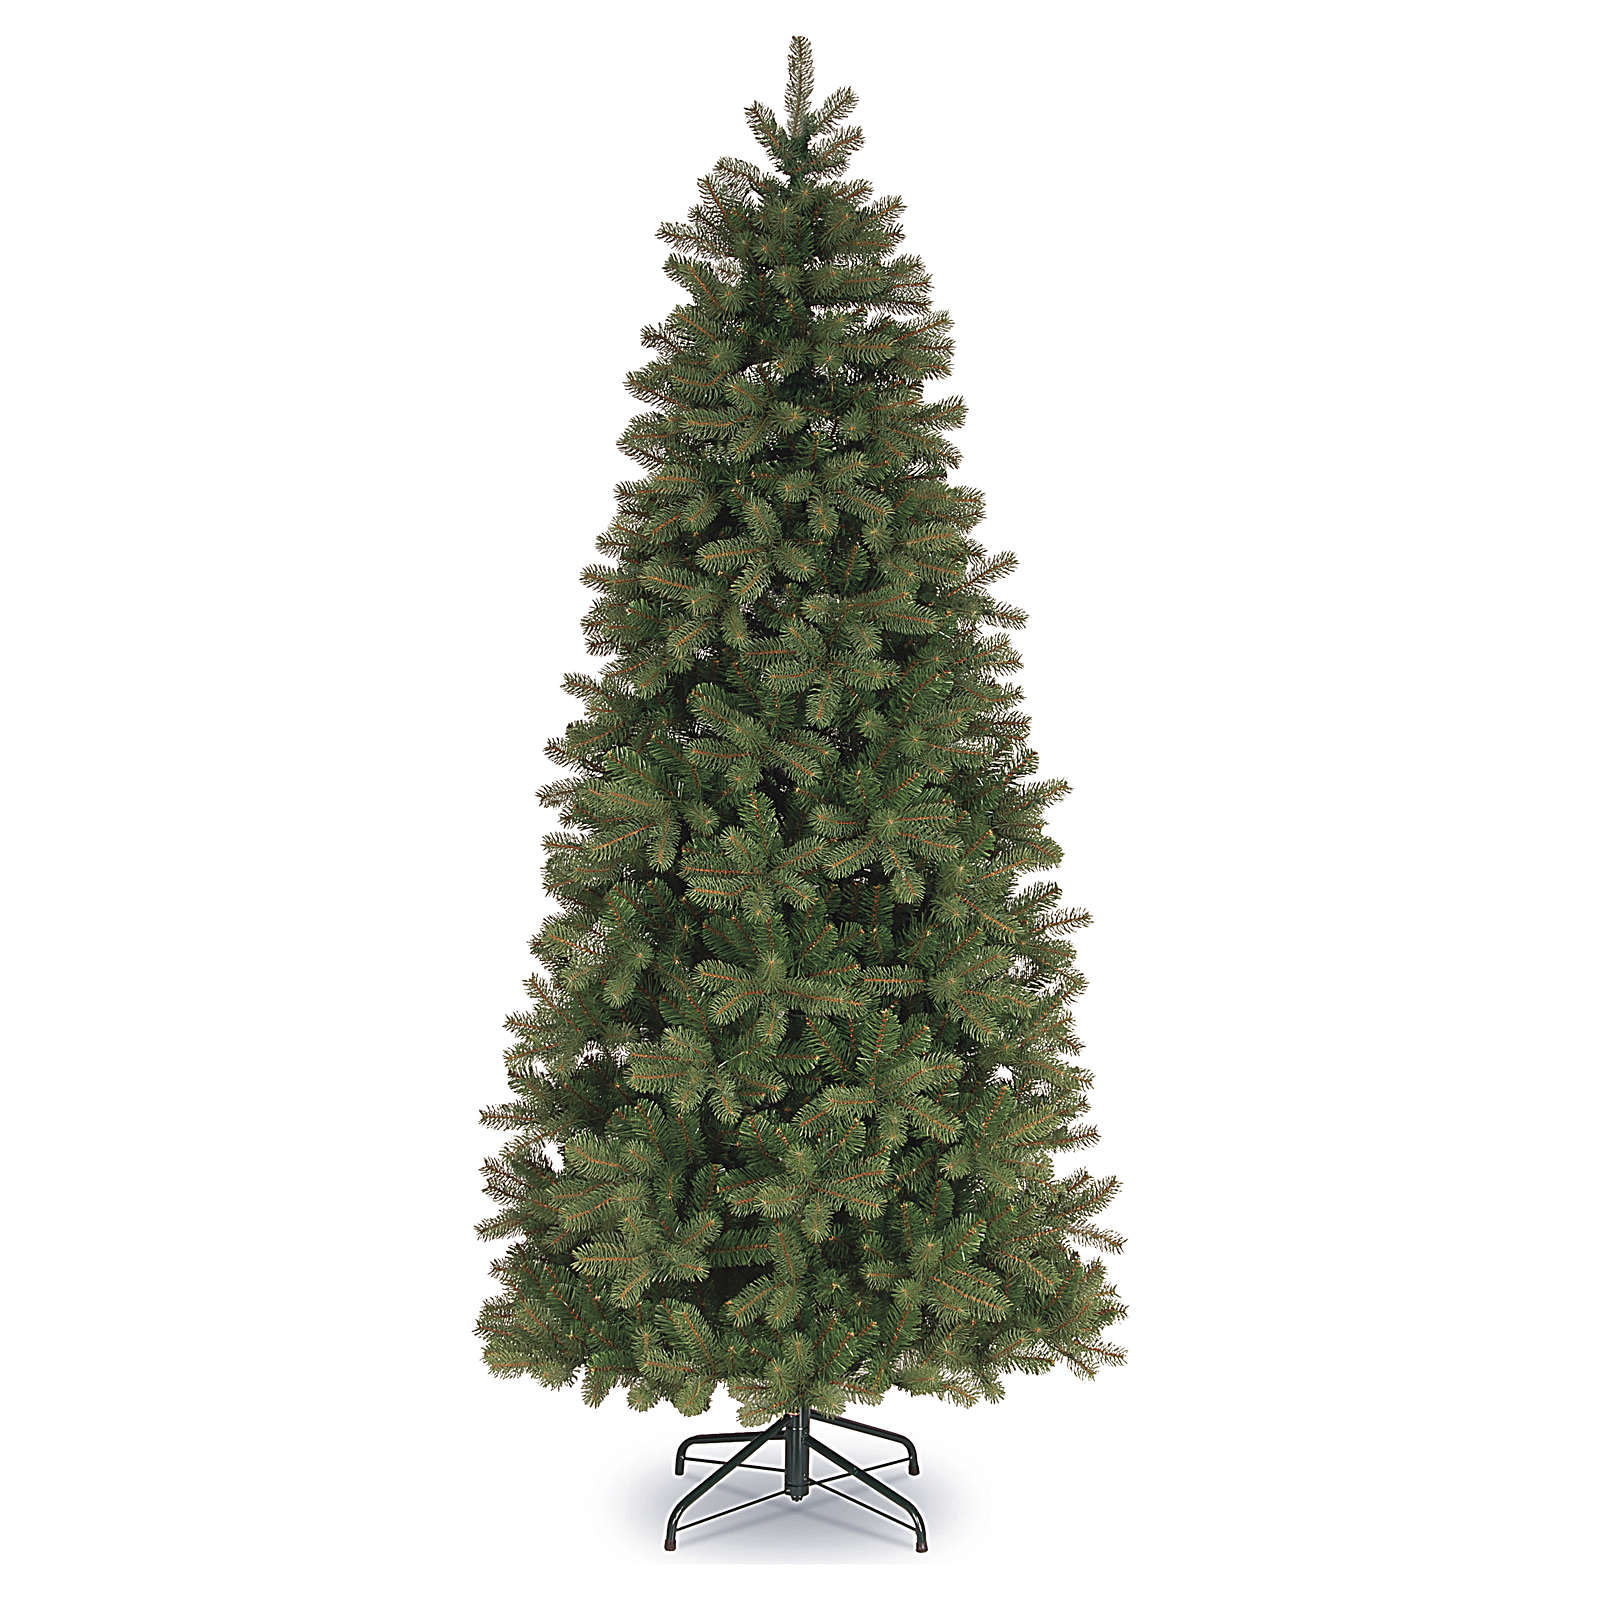 Albero Di Natale Slim 240.Albero Di Natale 240 Cm Poly Slim Verde Bayberry Spruce Ebay